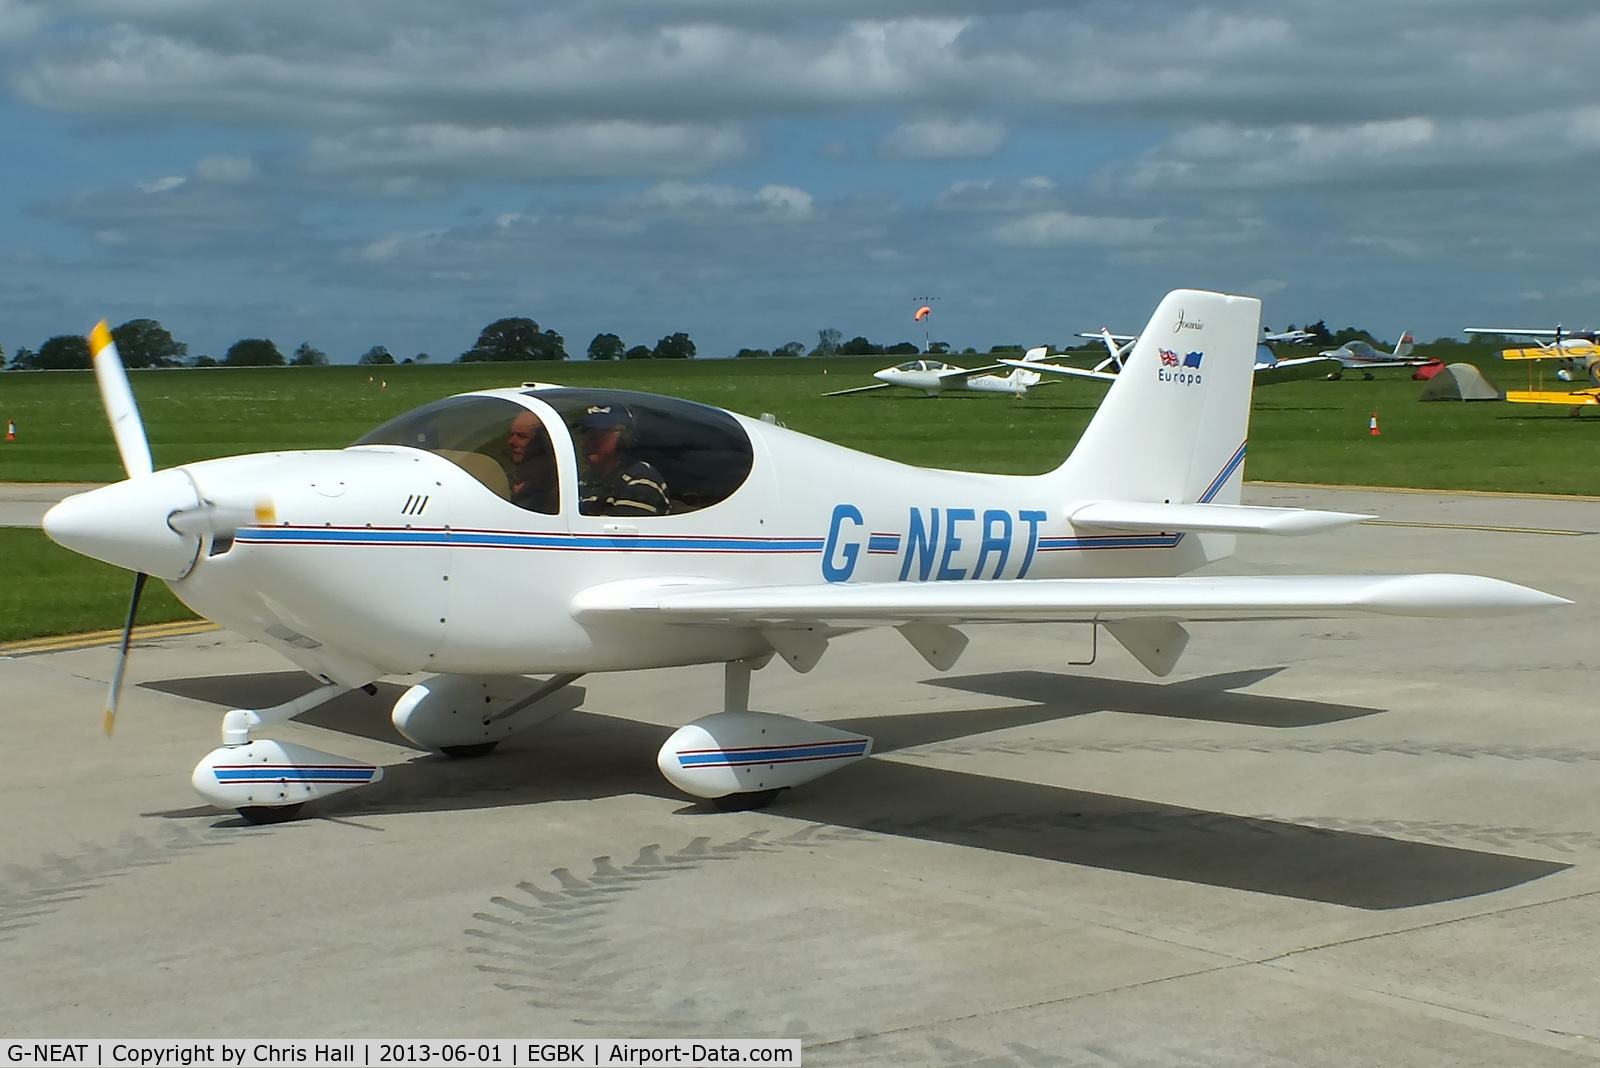 G-NEAT, 1996 Europa Tri-Gear C/N PFA 247-12642, at AeroExpo 2013